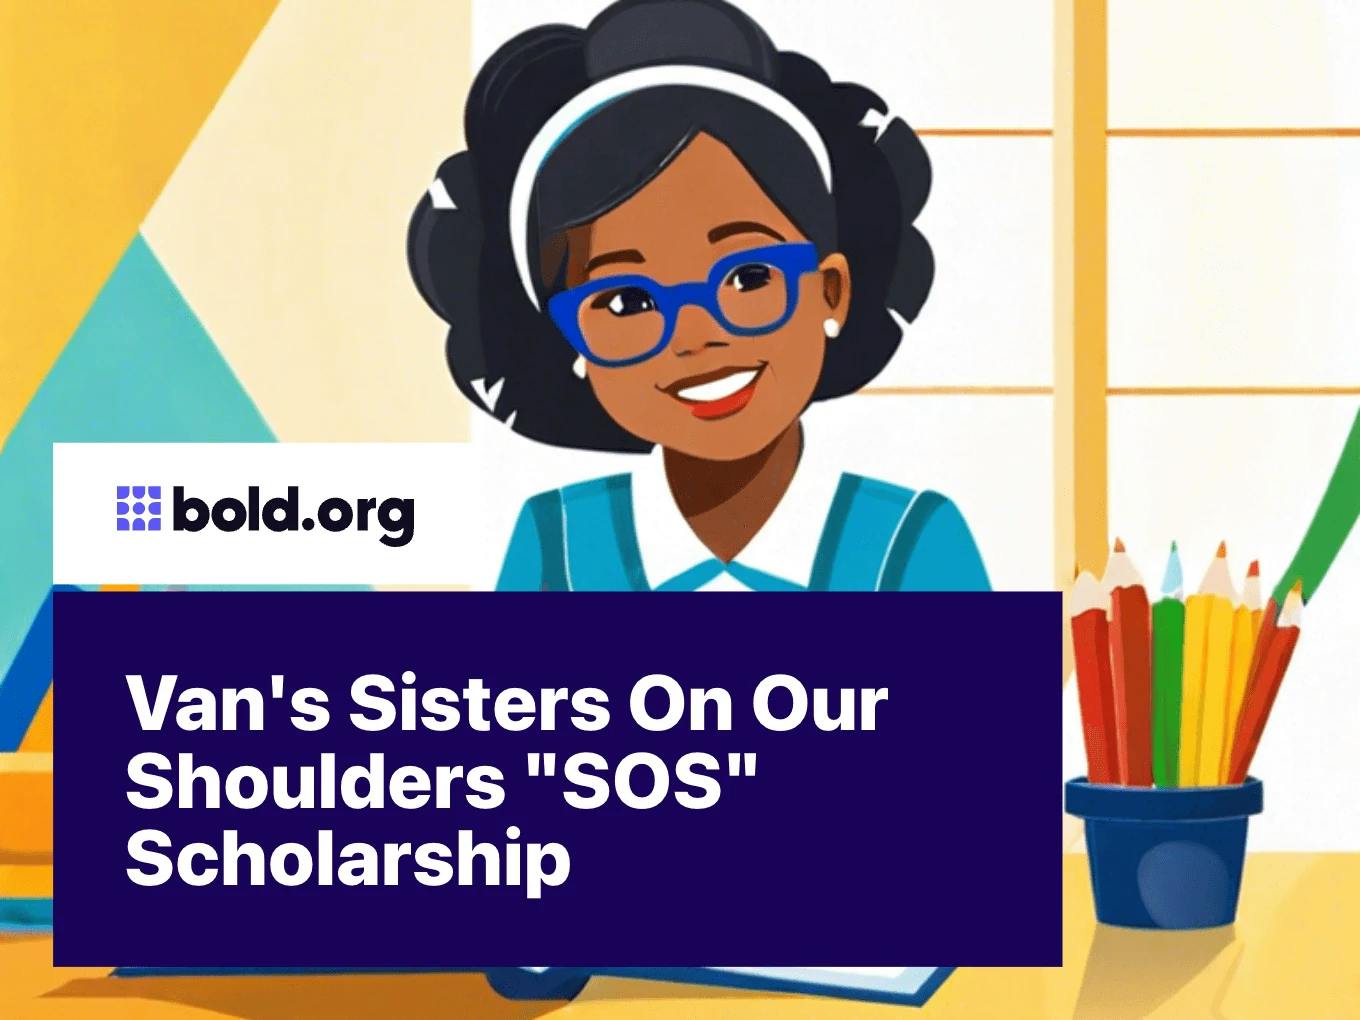 Van's Sisters On Our Shoulders "SOS" Scholarship